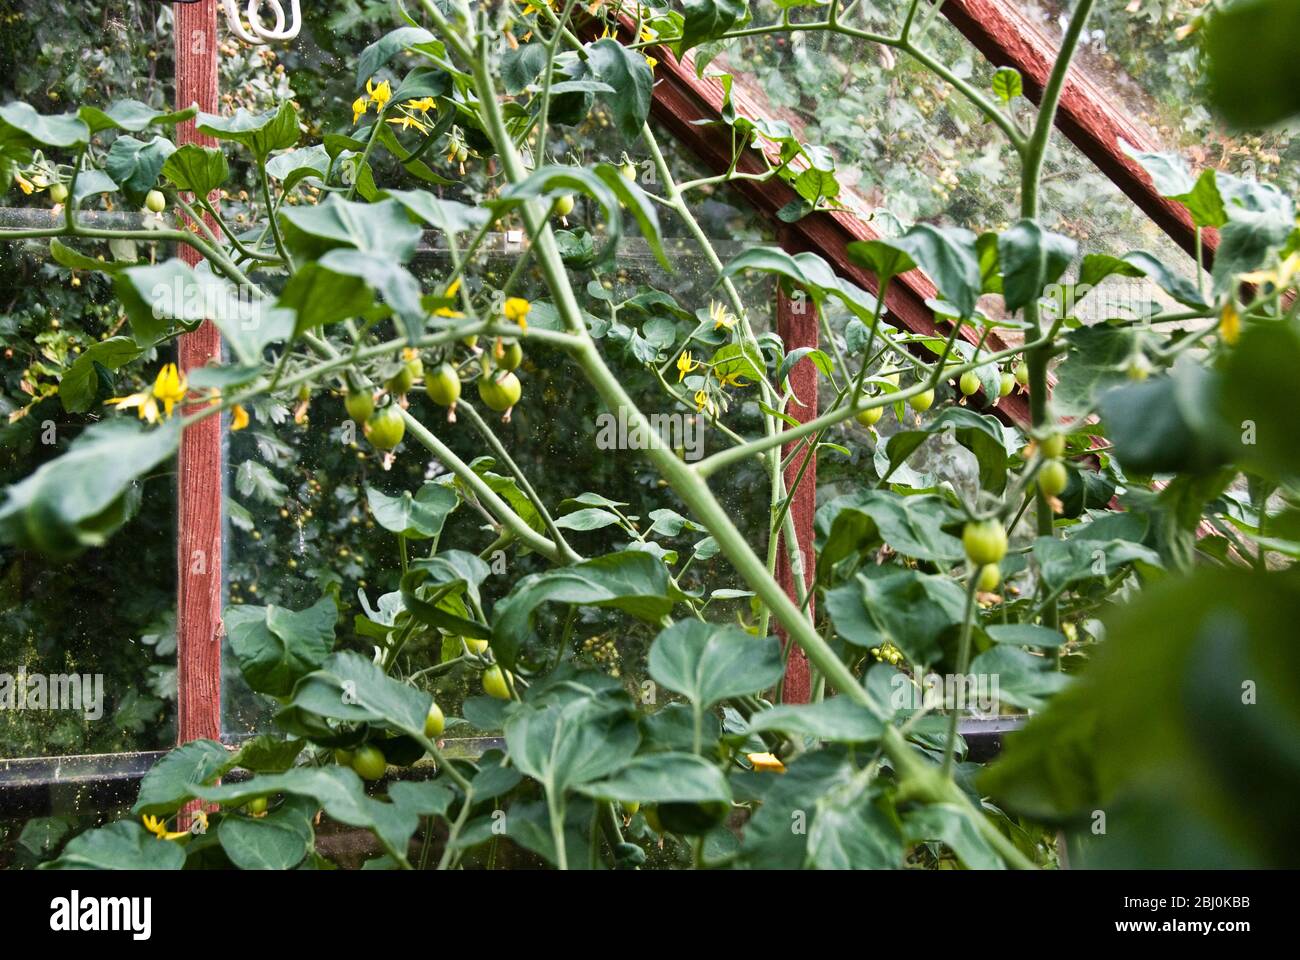 Tomaten wachsen im Gewächshaus - Stockfoto